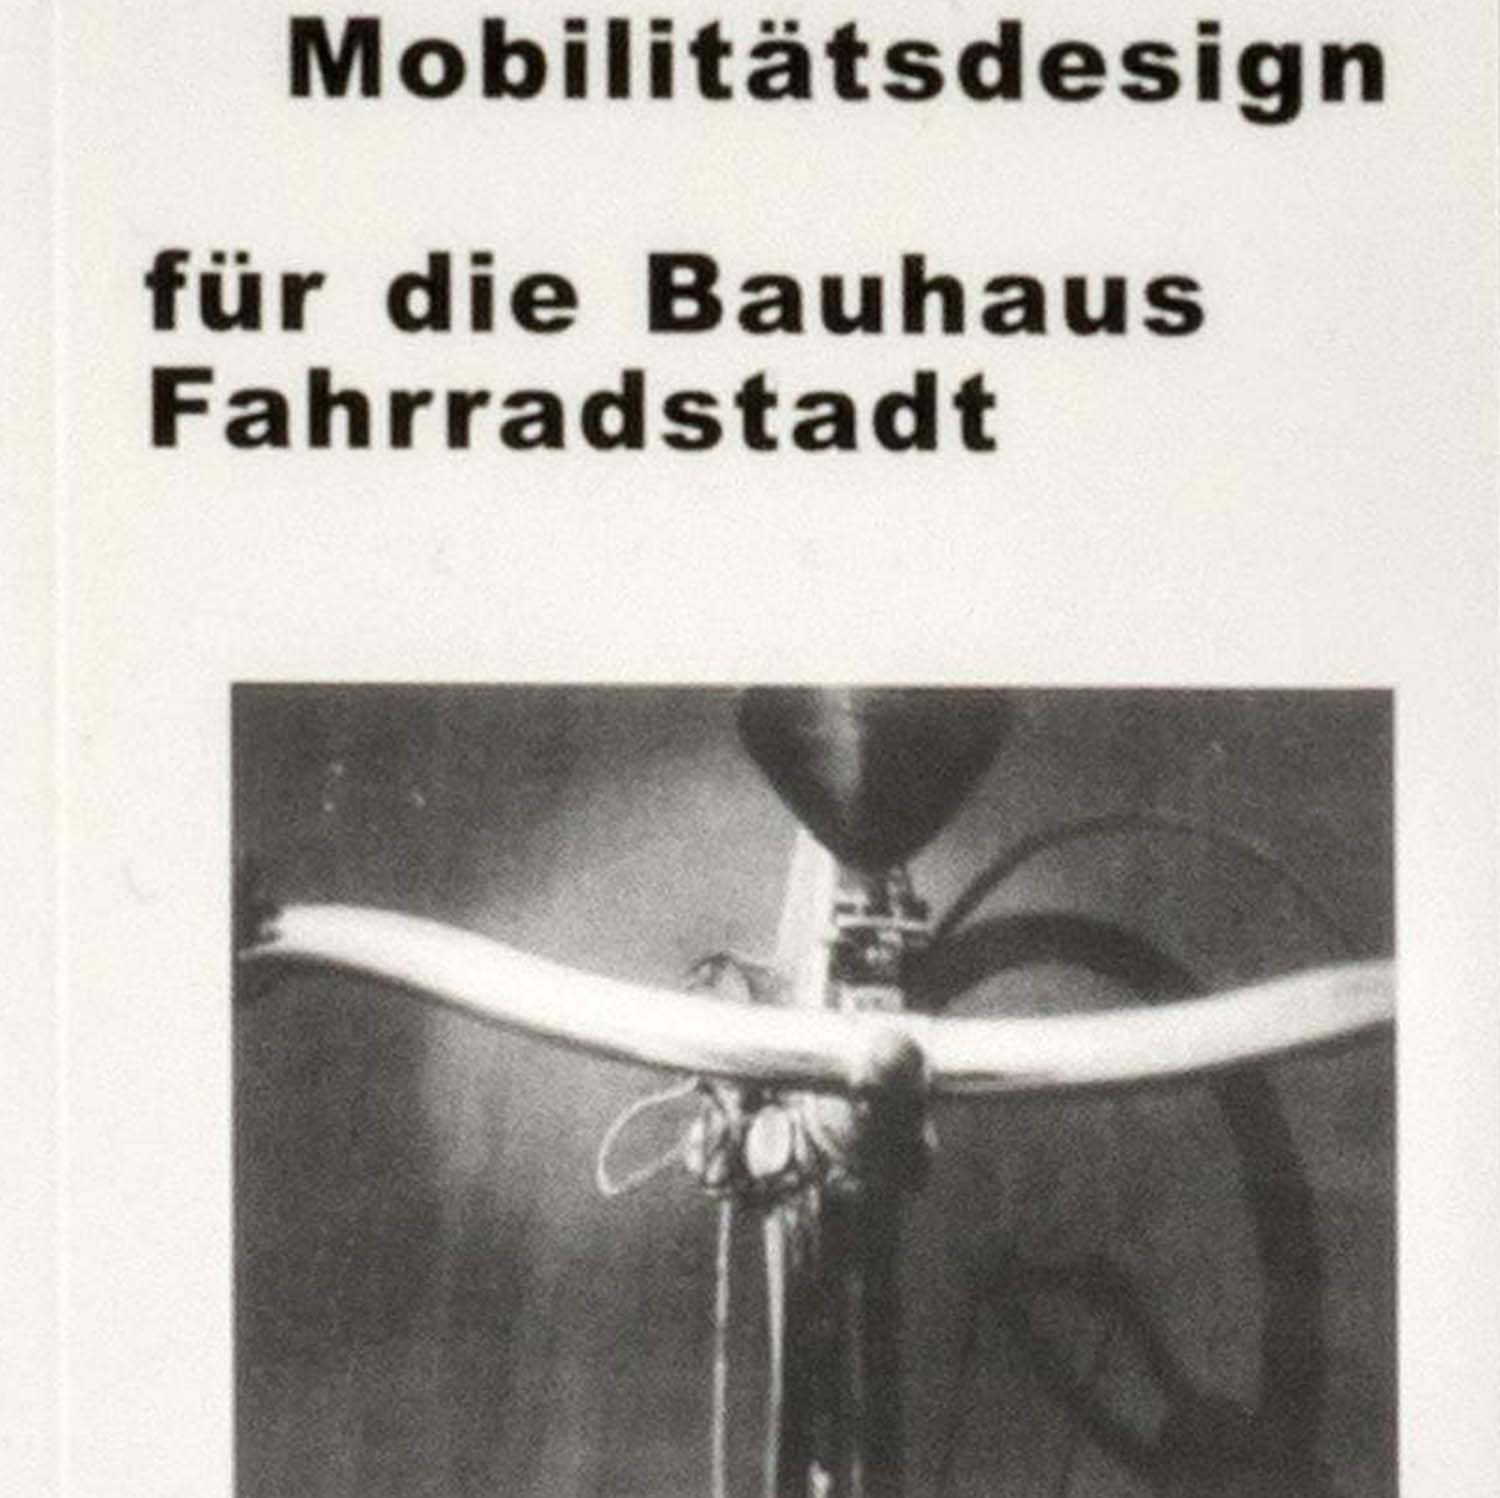 Image de Conception de la mobilité dans la ville cycliste du Bauhaus